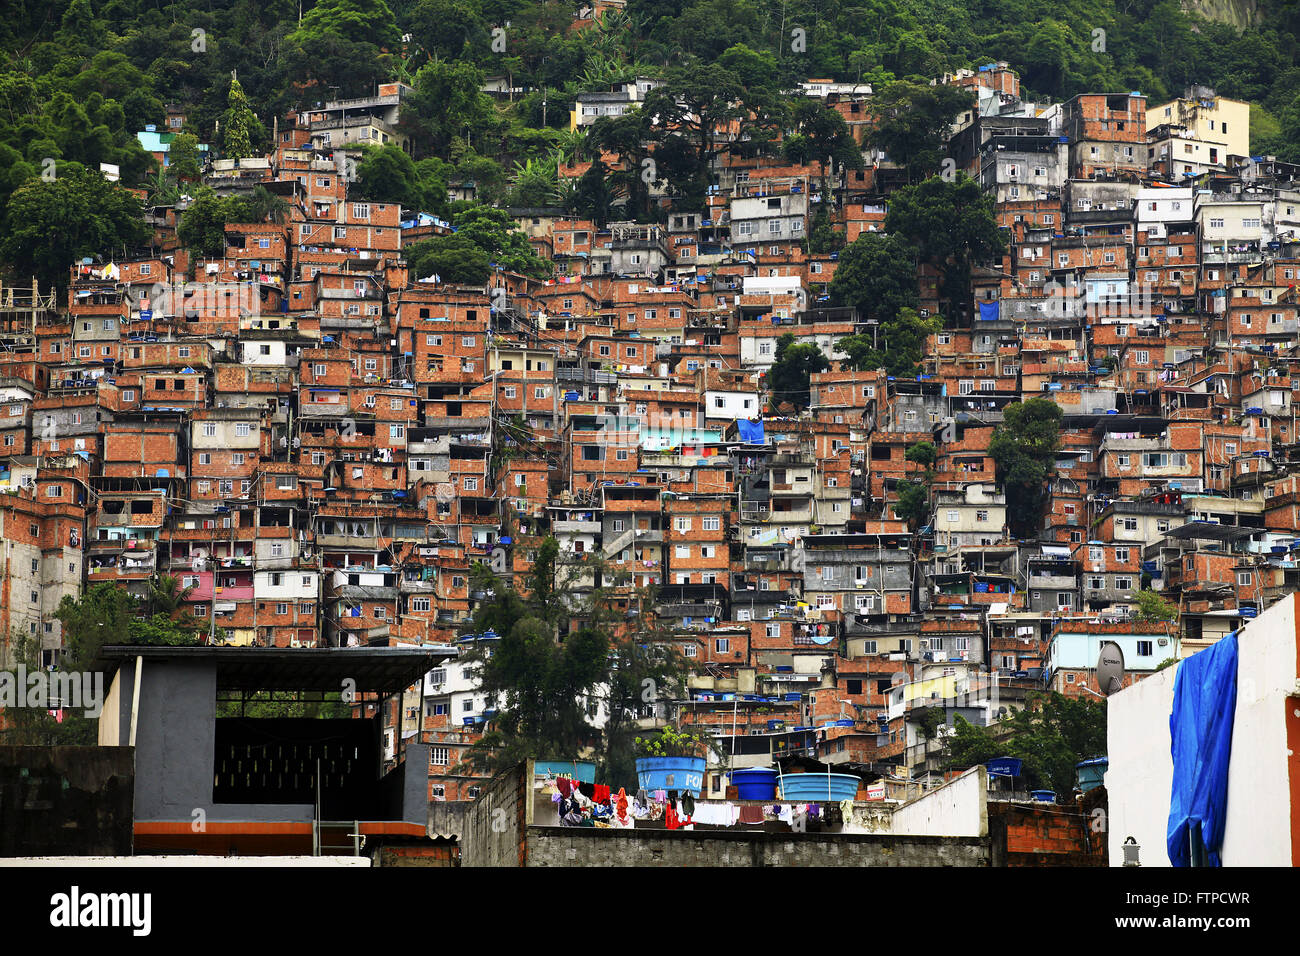 Favela da Rocinha - Sao Conrado neighborhood - south of the city of Rio de Janeiro Stock Photo